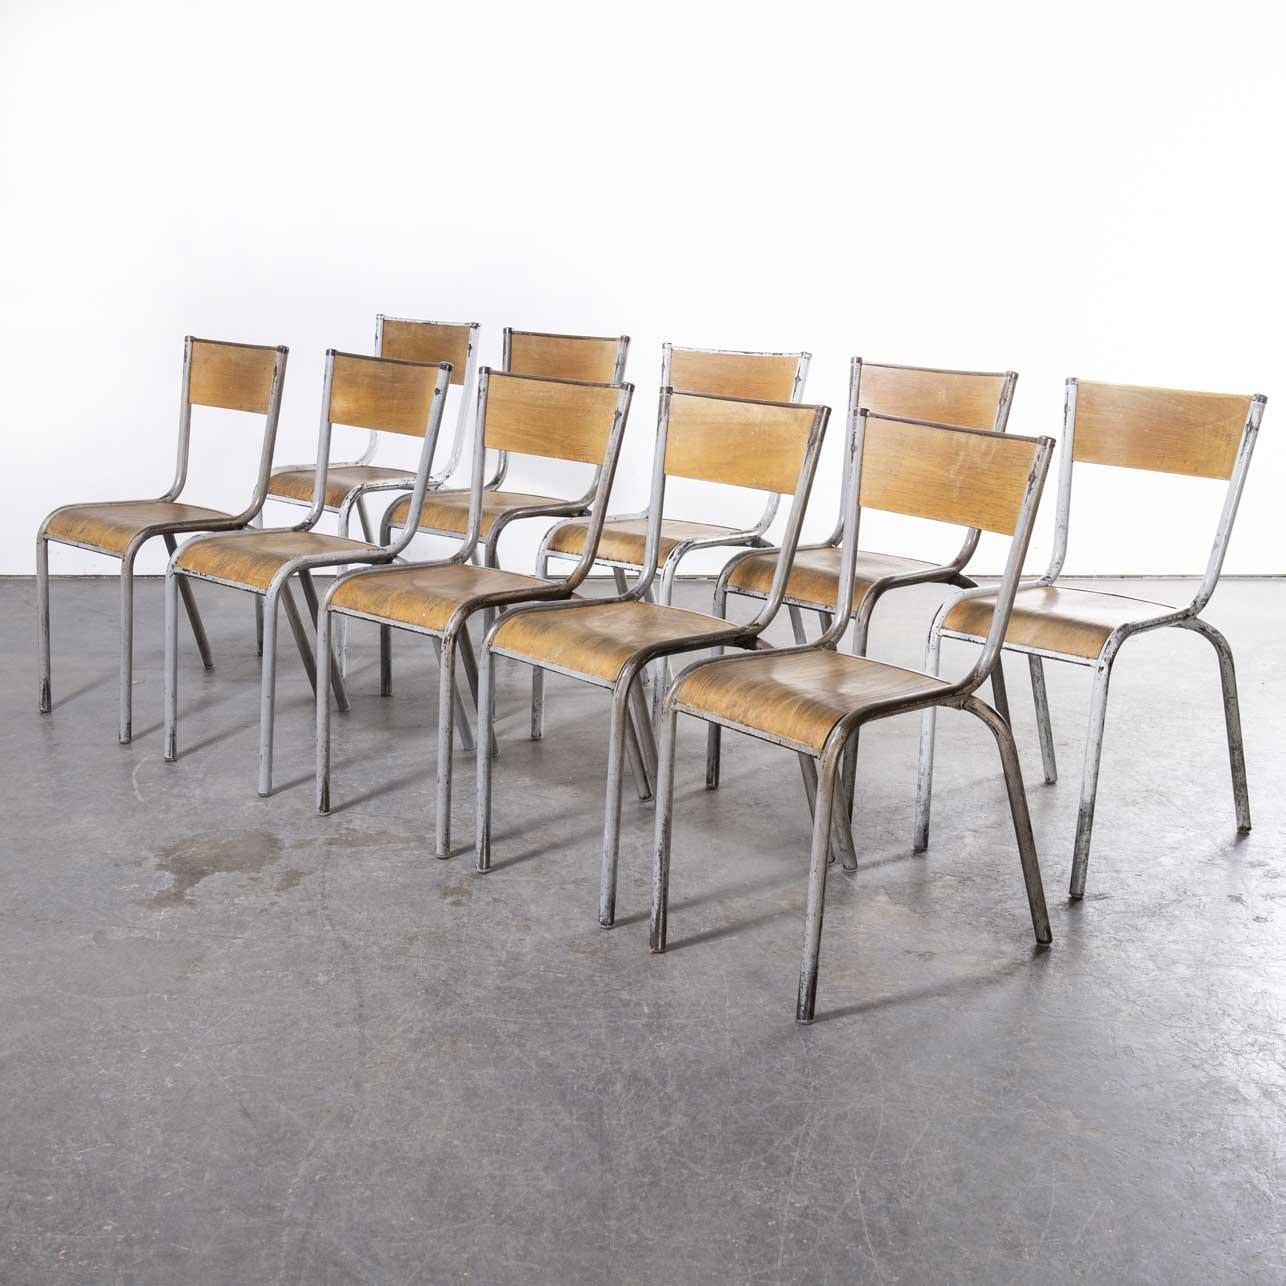 1950's French Mullca Hellgraue Stapel-Esszimmerstühle - Satz von zehn
1950's French Mullca Light Grey Stacking Dining Chairs - Set Of Ten. Einer unserer Lieblingsstühle. 1947 gründeten Robert Muller und Gaston Cavaillon das Unternehmen, das den wohl